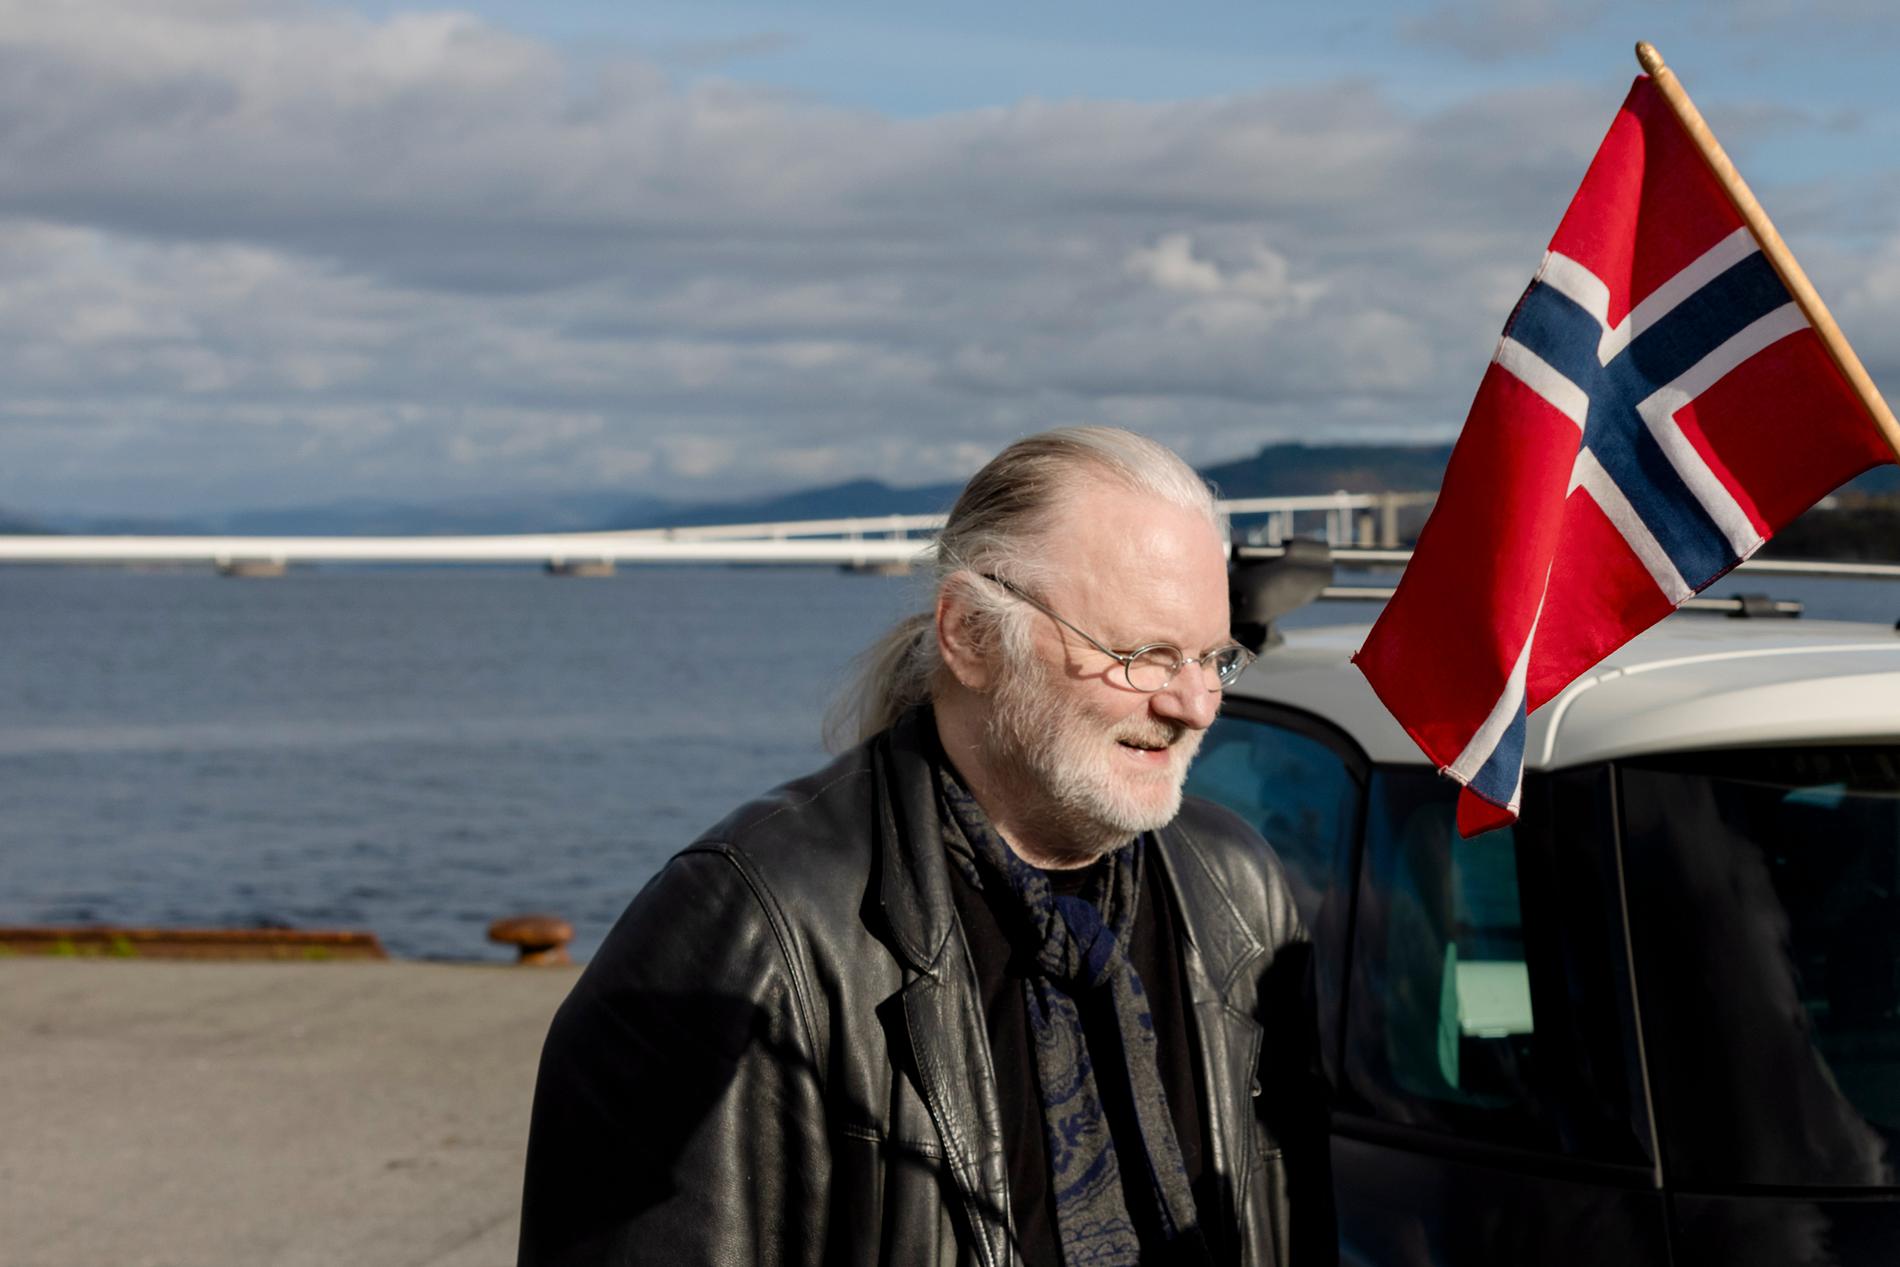 Vincitore: per la prima volta in 95 anni, uno scrittore norvegese ha vinto il Premio Nobel per la letteratura.  In precedenza hanno vinto Björnstjerne Björnsson, Knut Hamsun e Sigrid Undst. 